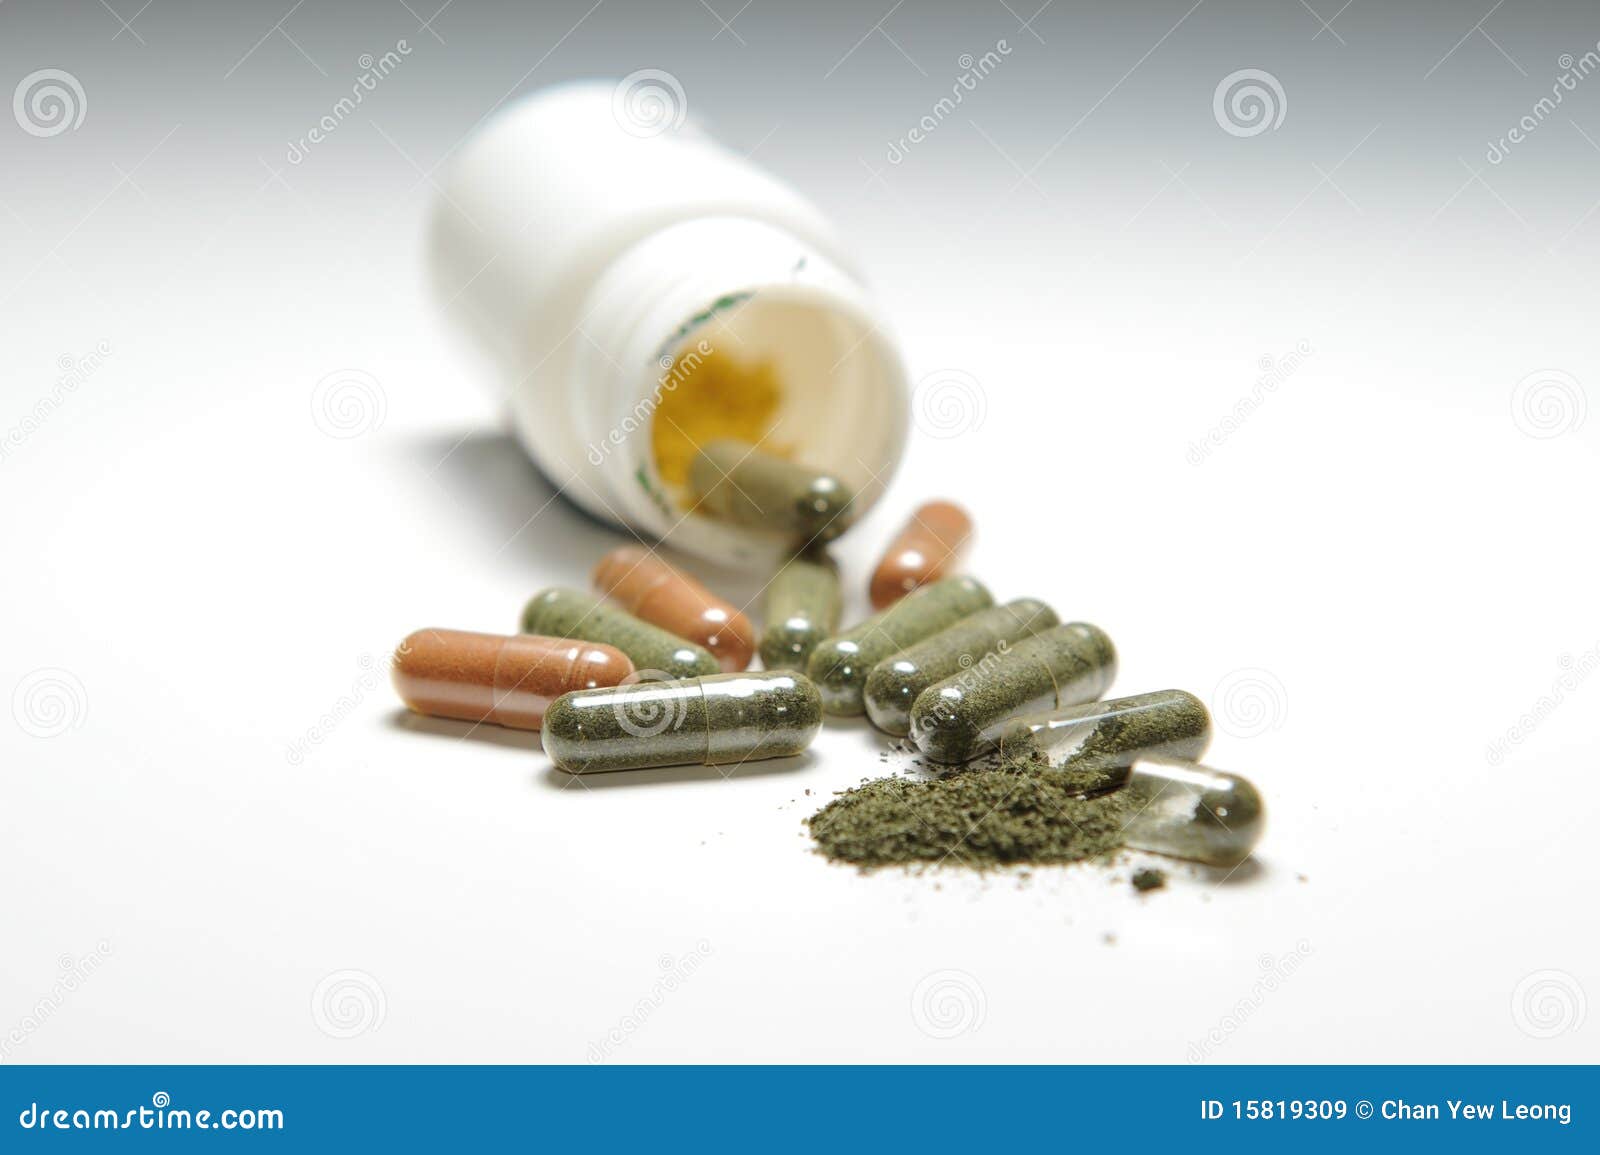 capsule and powder